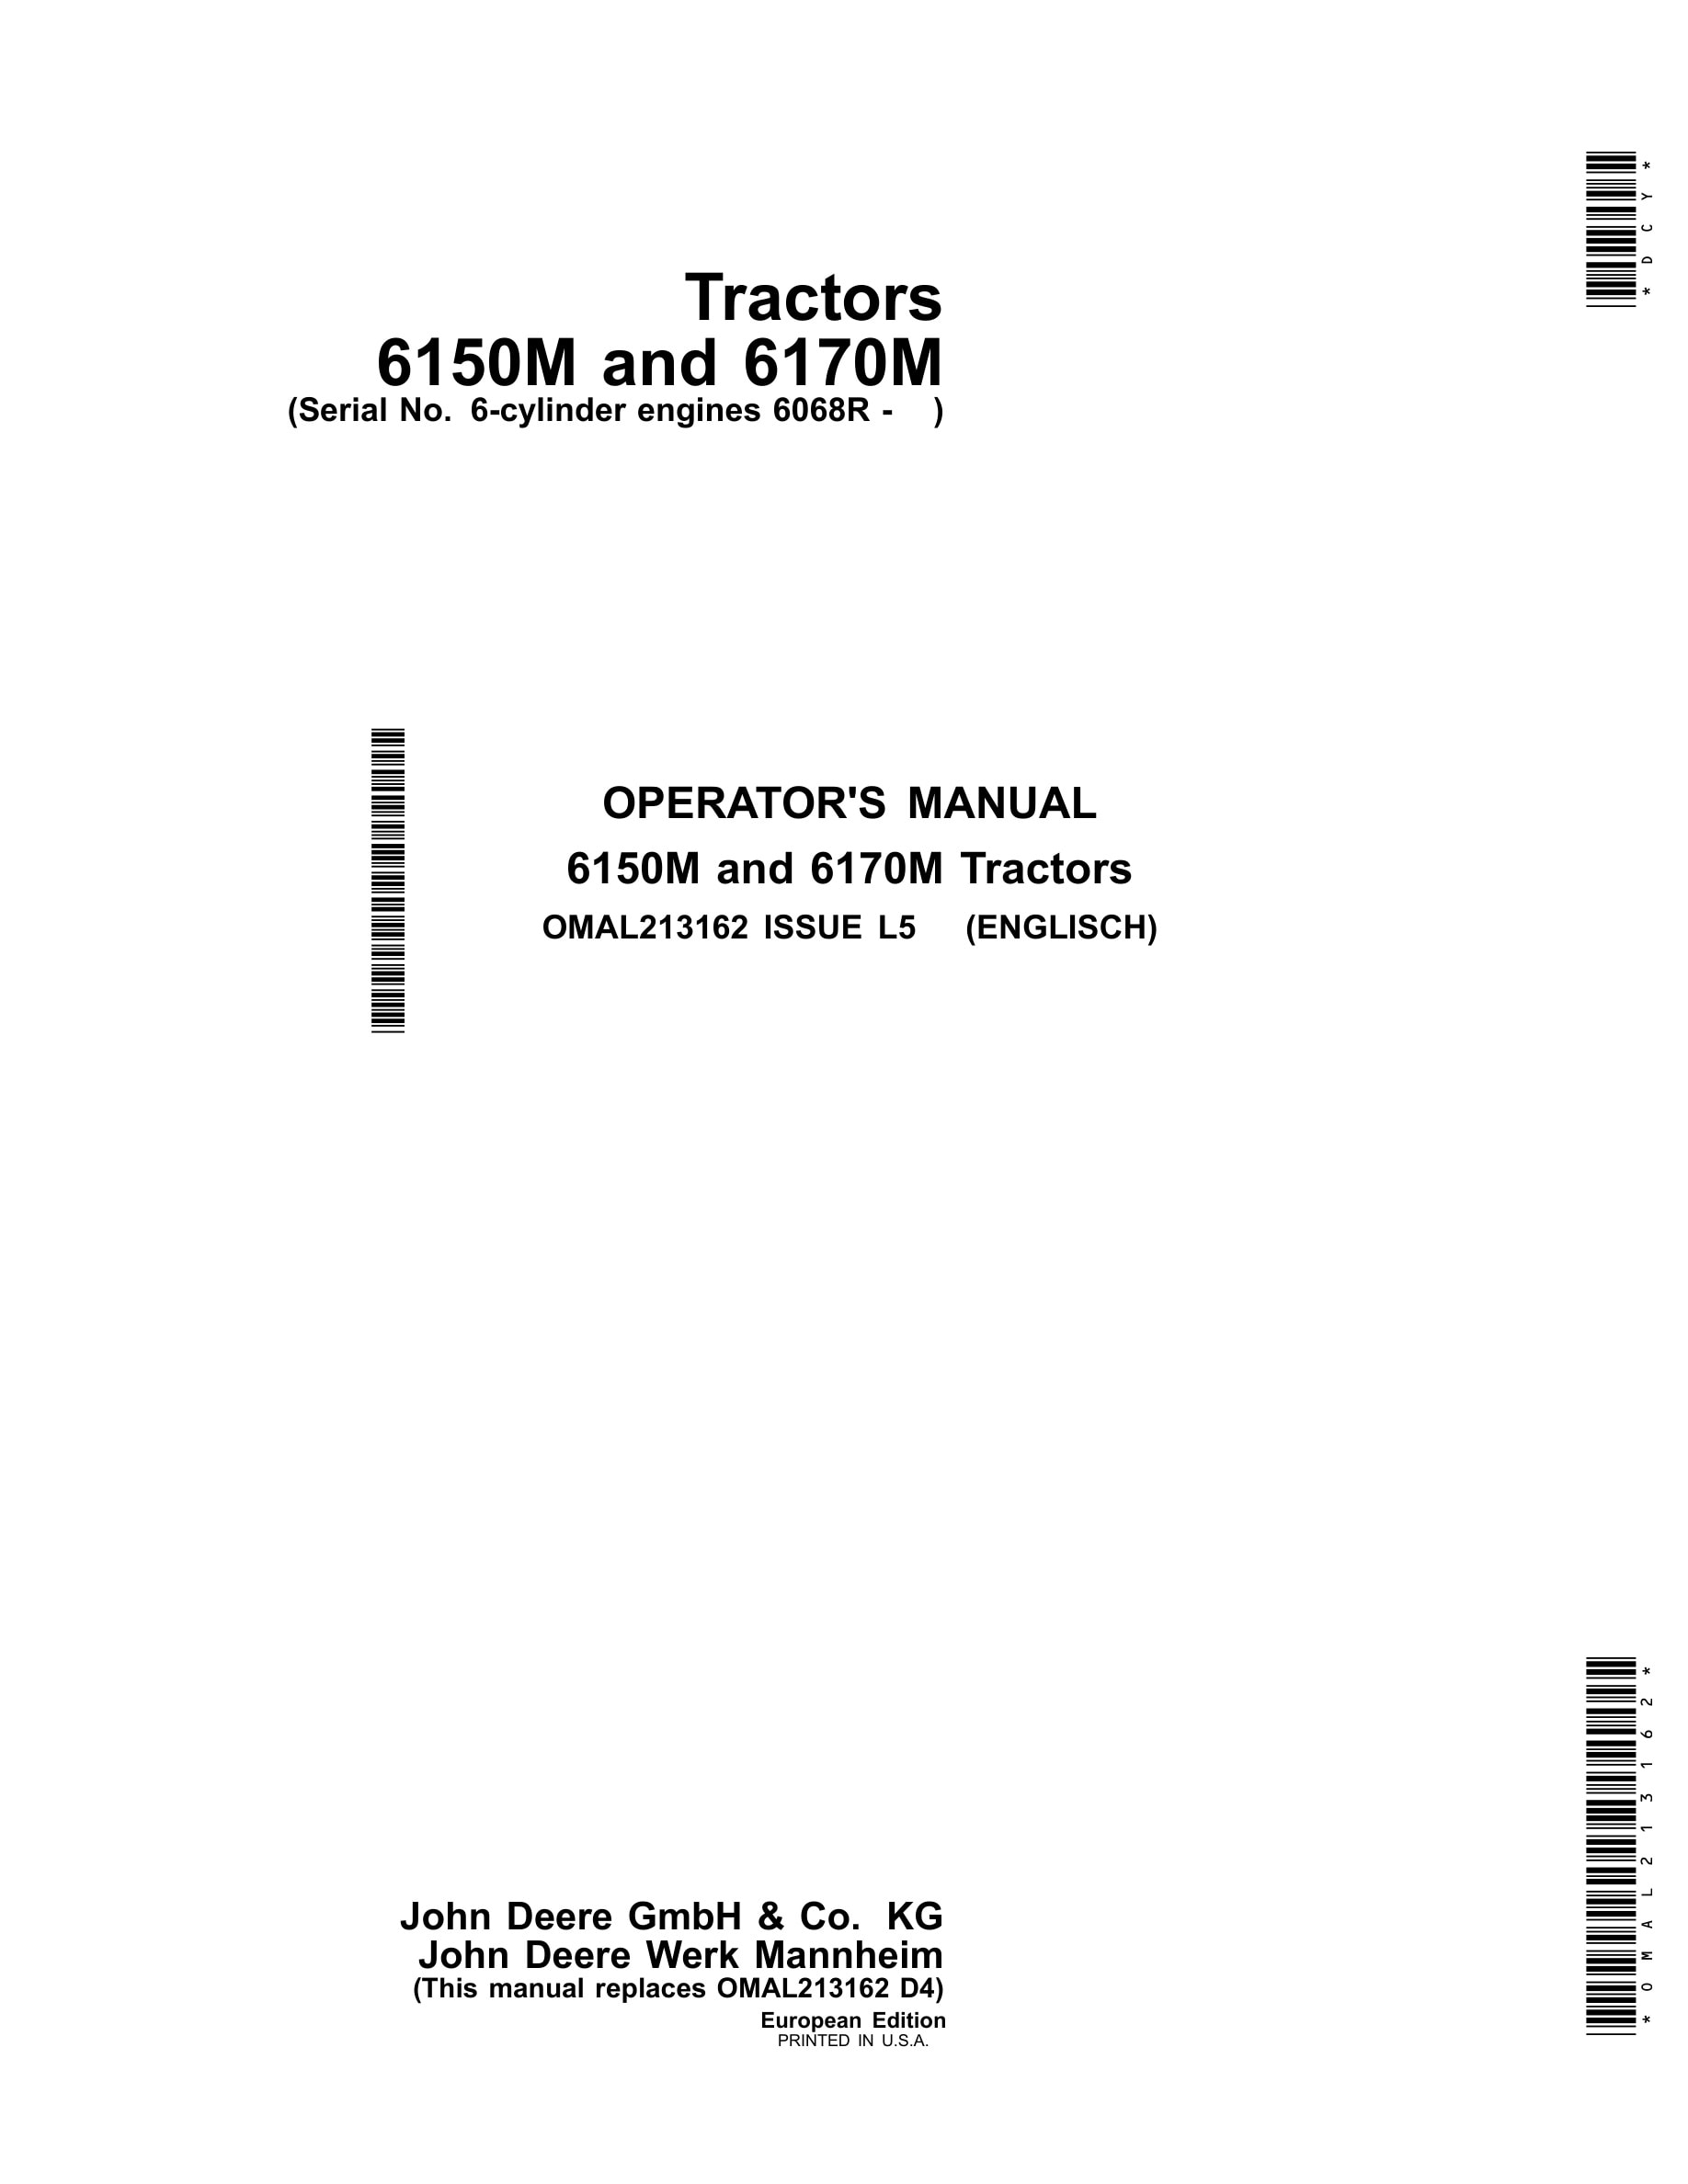 John Deere 6150m And 6170m Tractors Operator Manuals OMAL213162-1